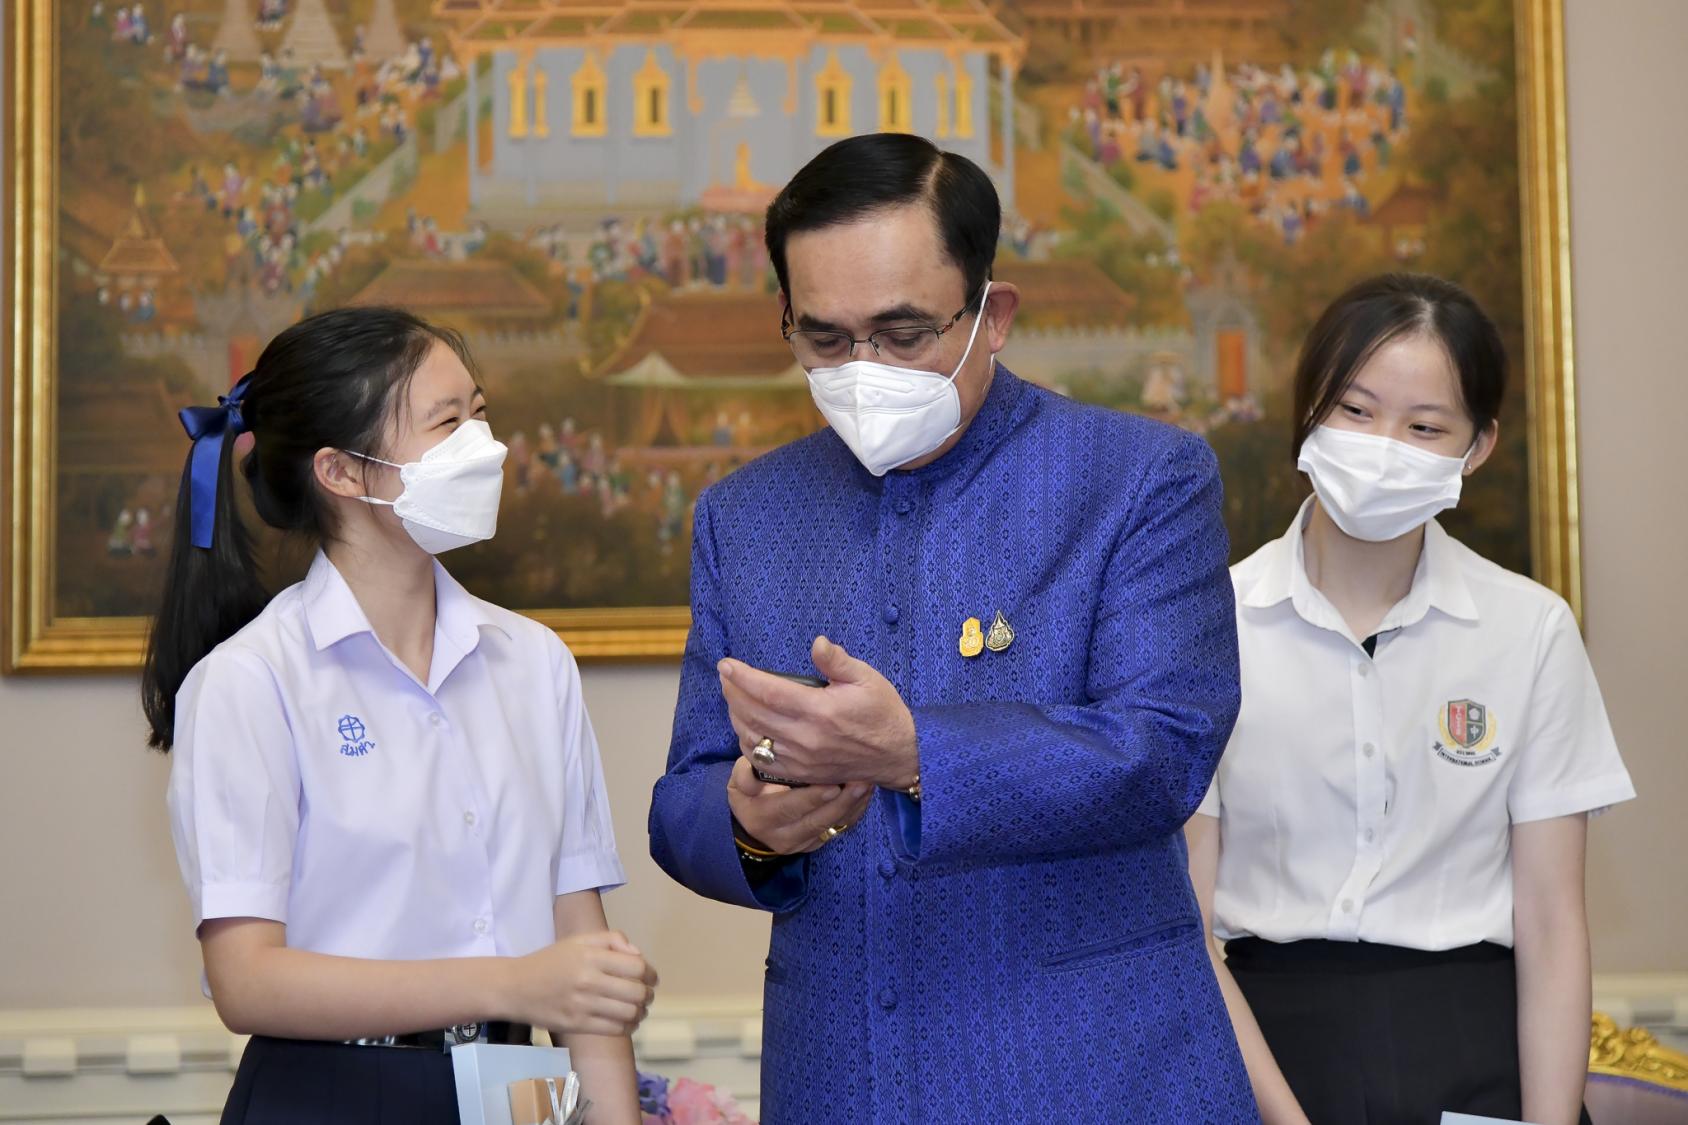 Deux jeunes militantes thaïlandaises pour le climat, Aminta Permpoonwiwat et Phatteeya Yongsanguanchai, rencontrent le général Prayut Chan-o-cha, Premier ministre de Thaïlande, au siège du gouvernement. 